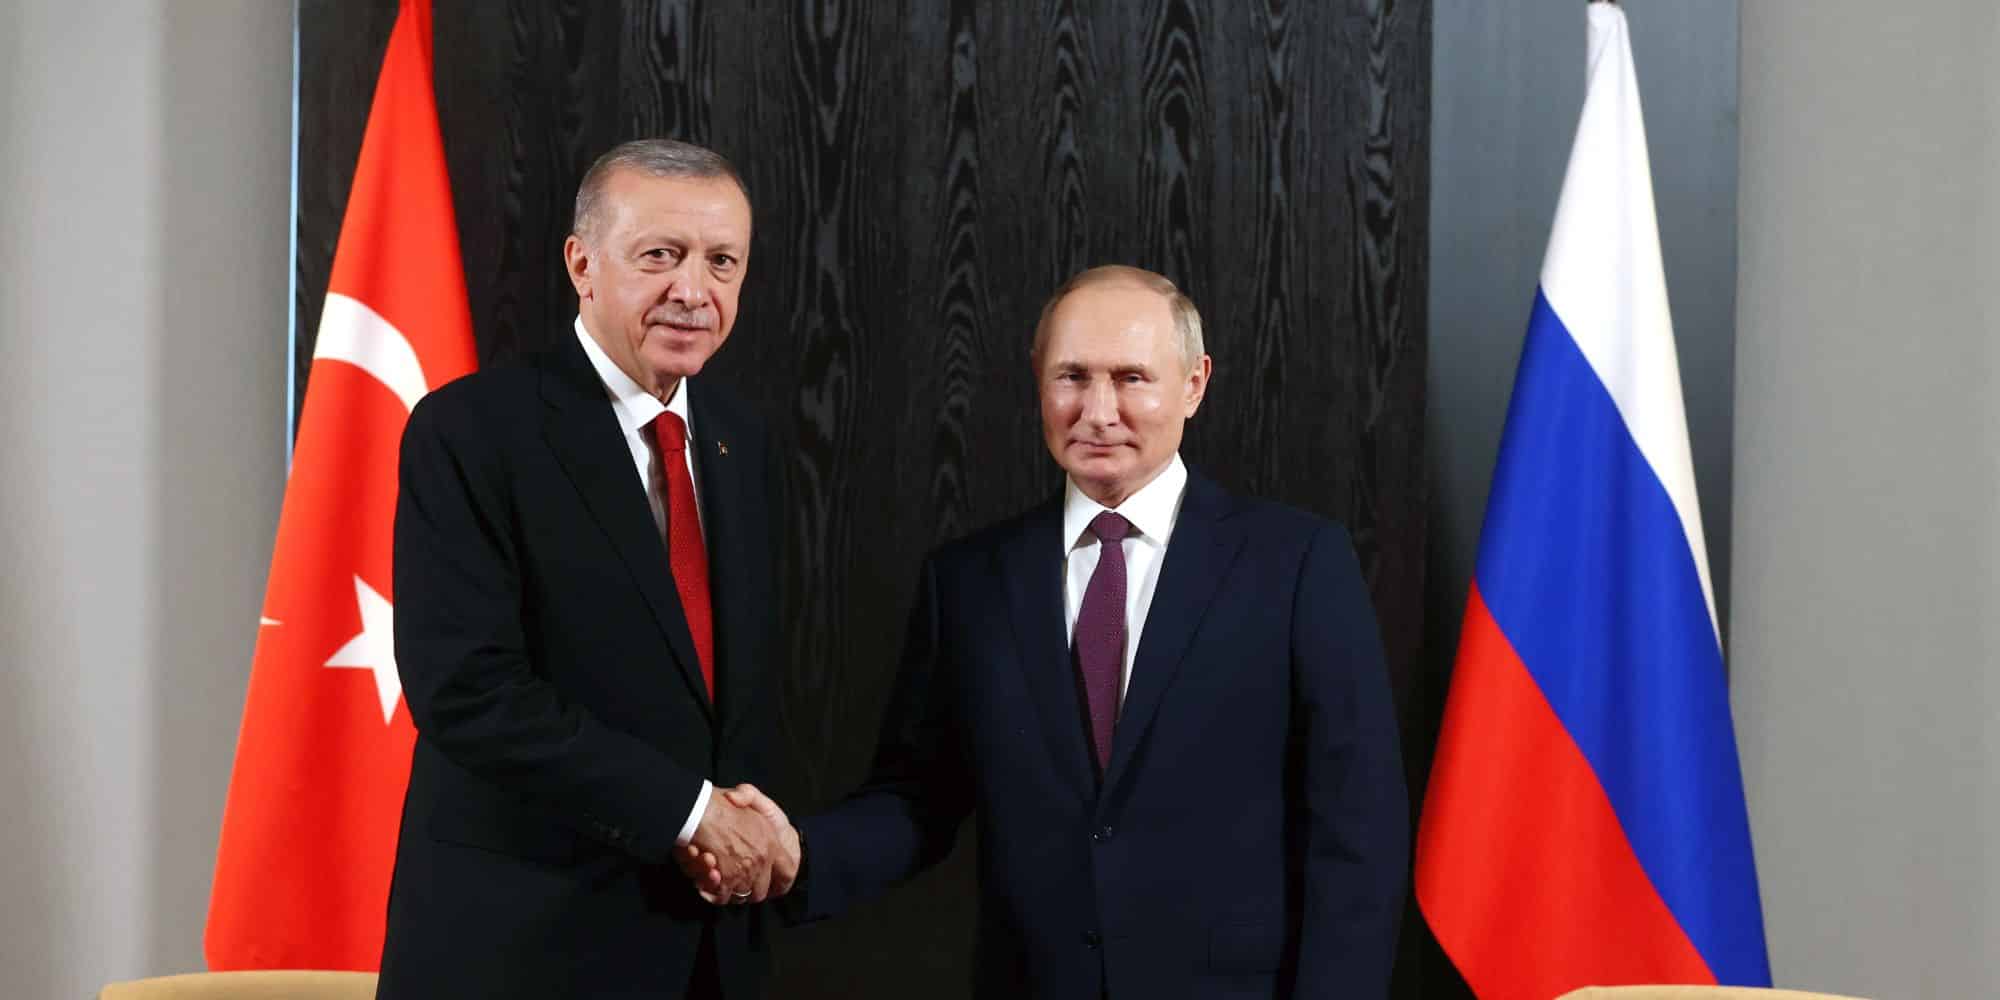 Ο Ρετζέπ Ταγίπ Ερντογάν μαζί με τον Βλαντιμίρ Πούτιν